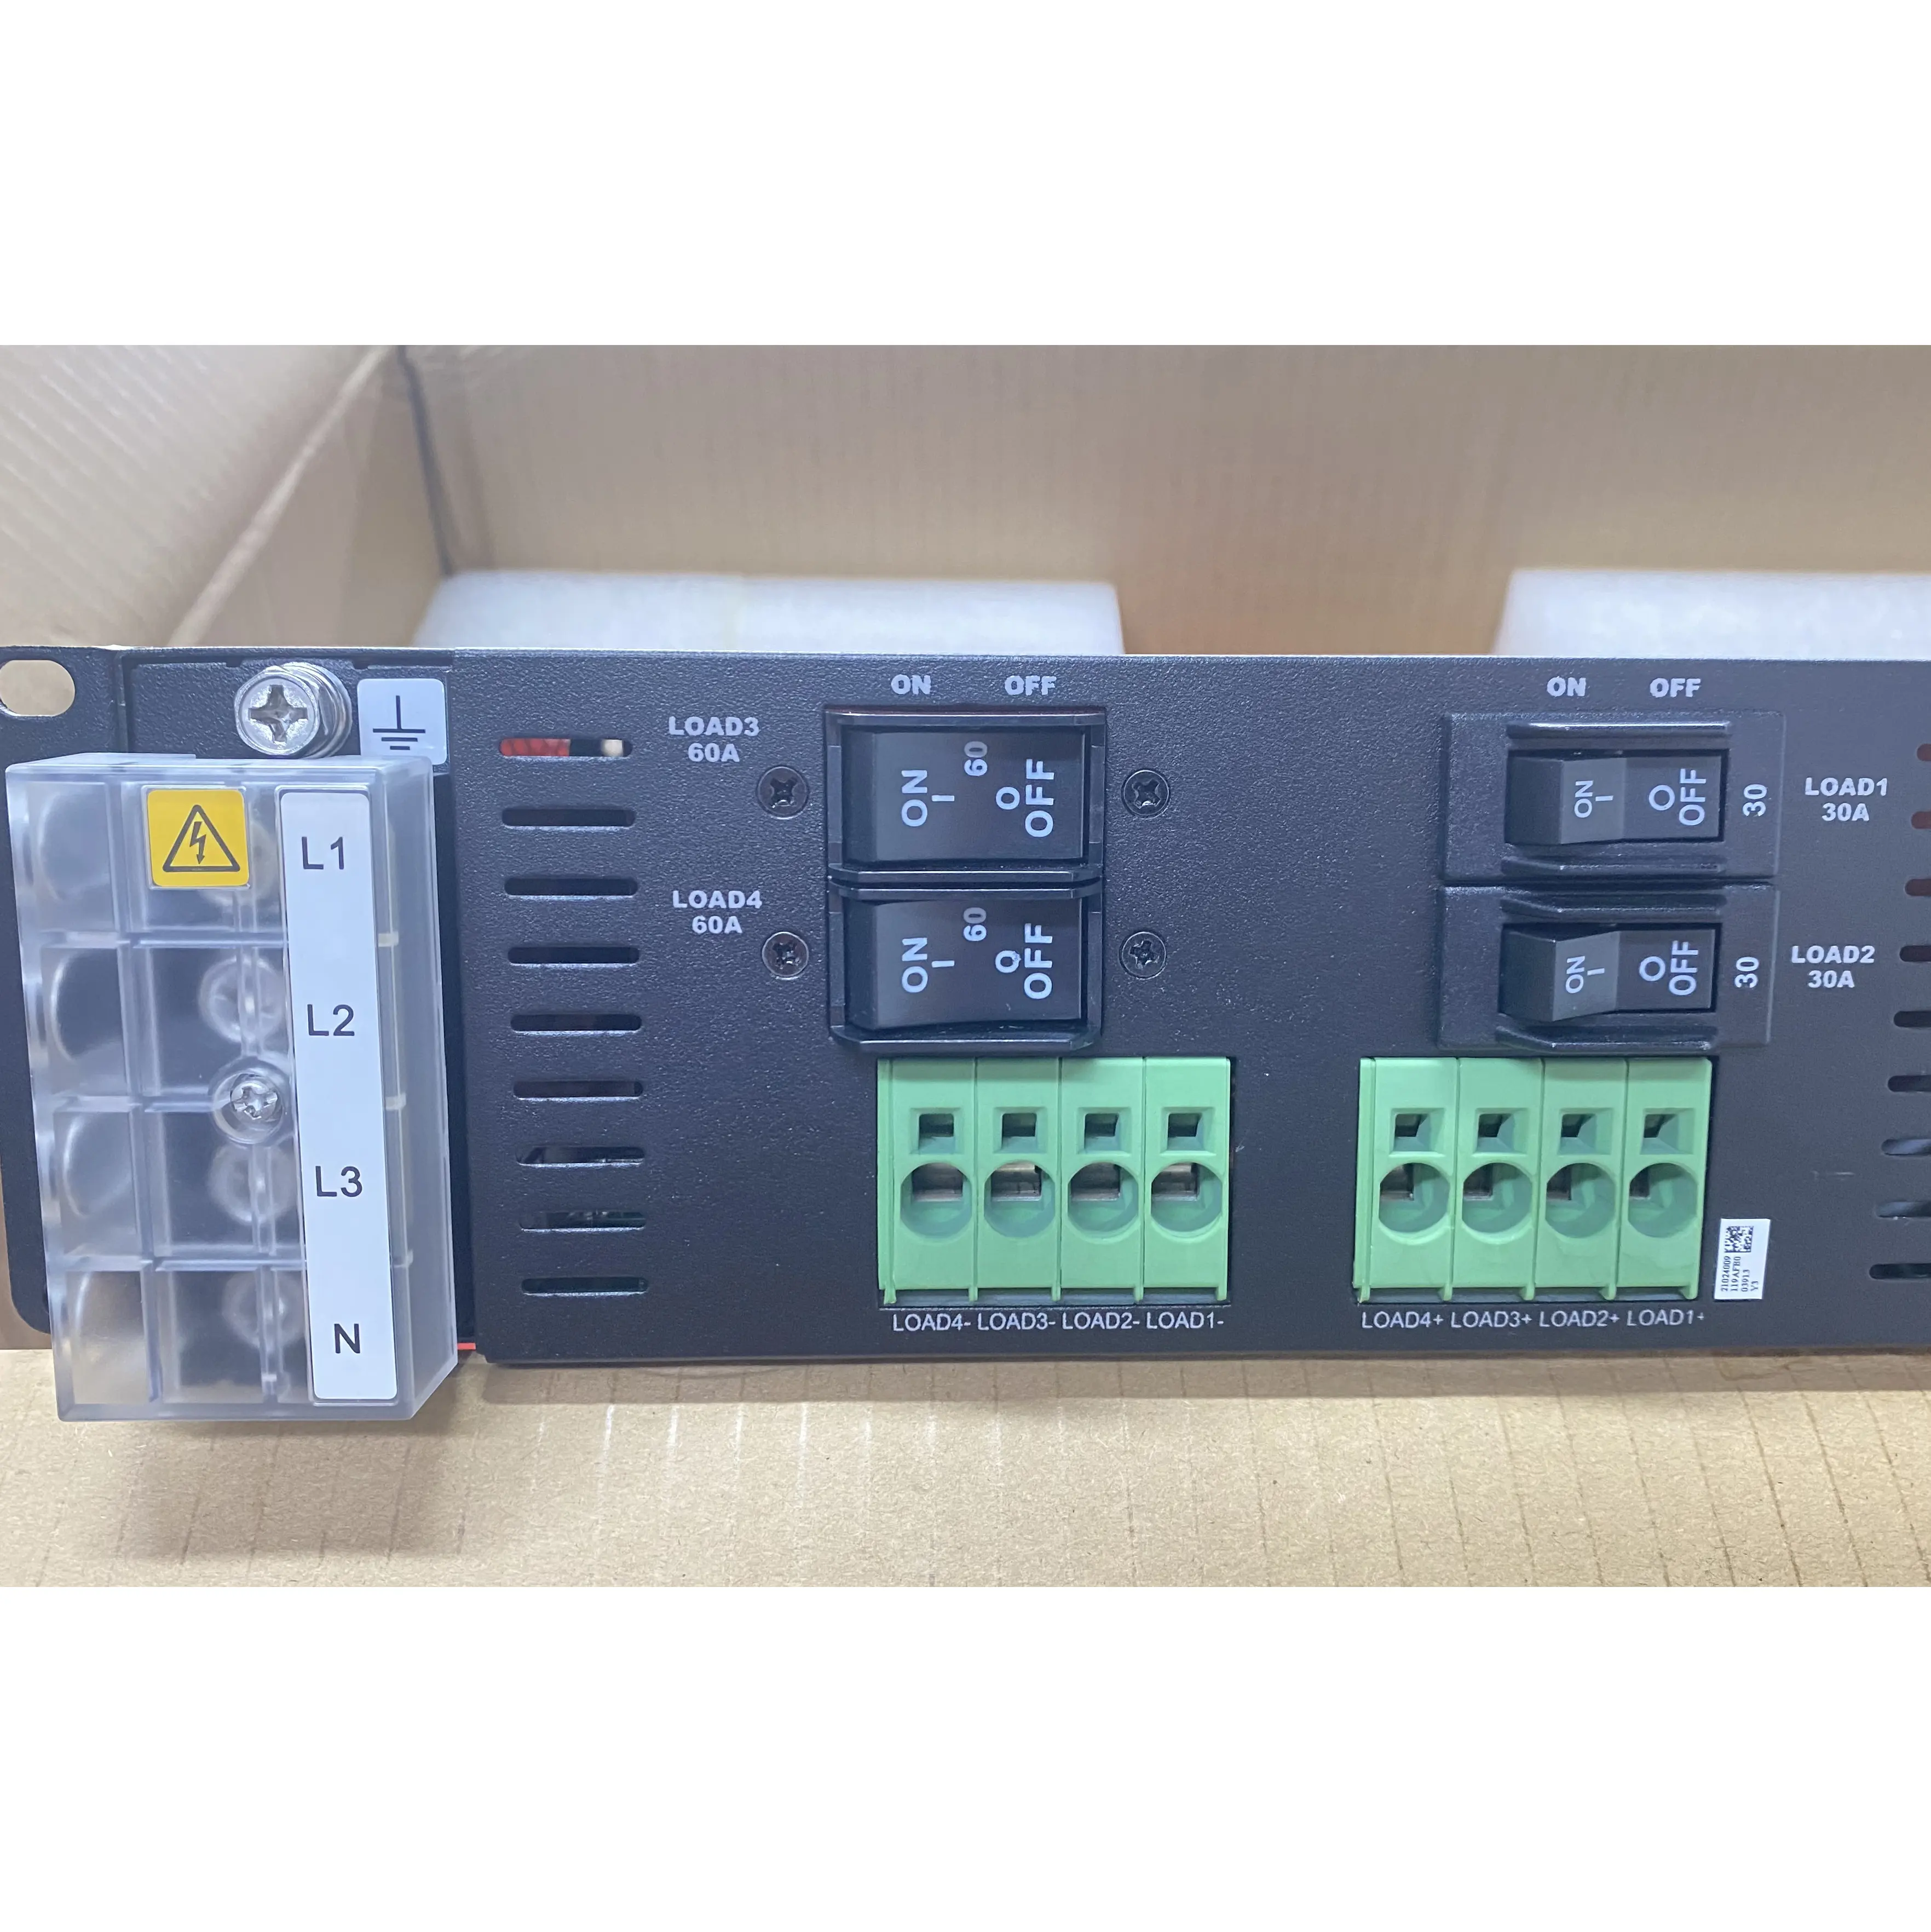 Seri HUA WE ETP4890 DC 48V adalah sistem suplai daya tipe kotak yang memasok daya untuk peralatan komunikasi etp4890-a2